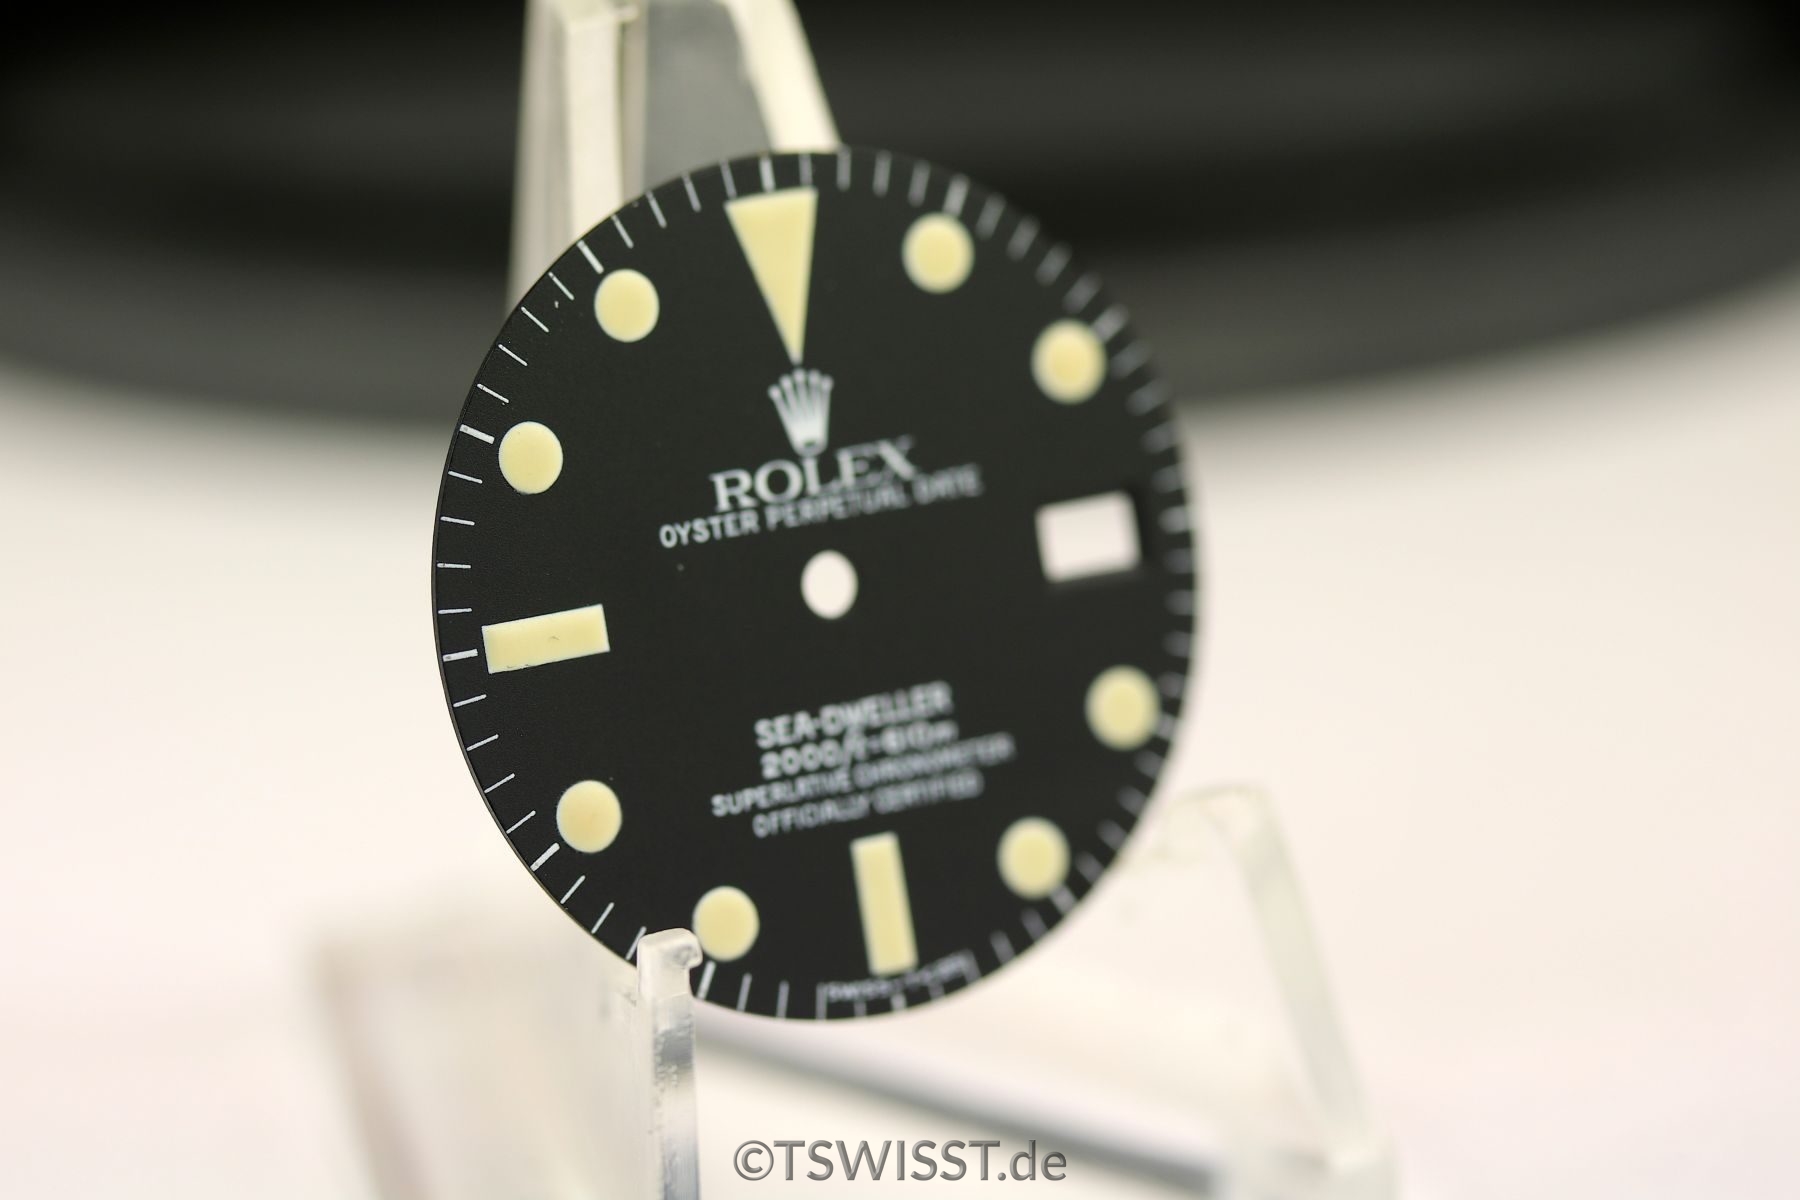 Rolex Seadweller 1665 dial